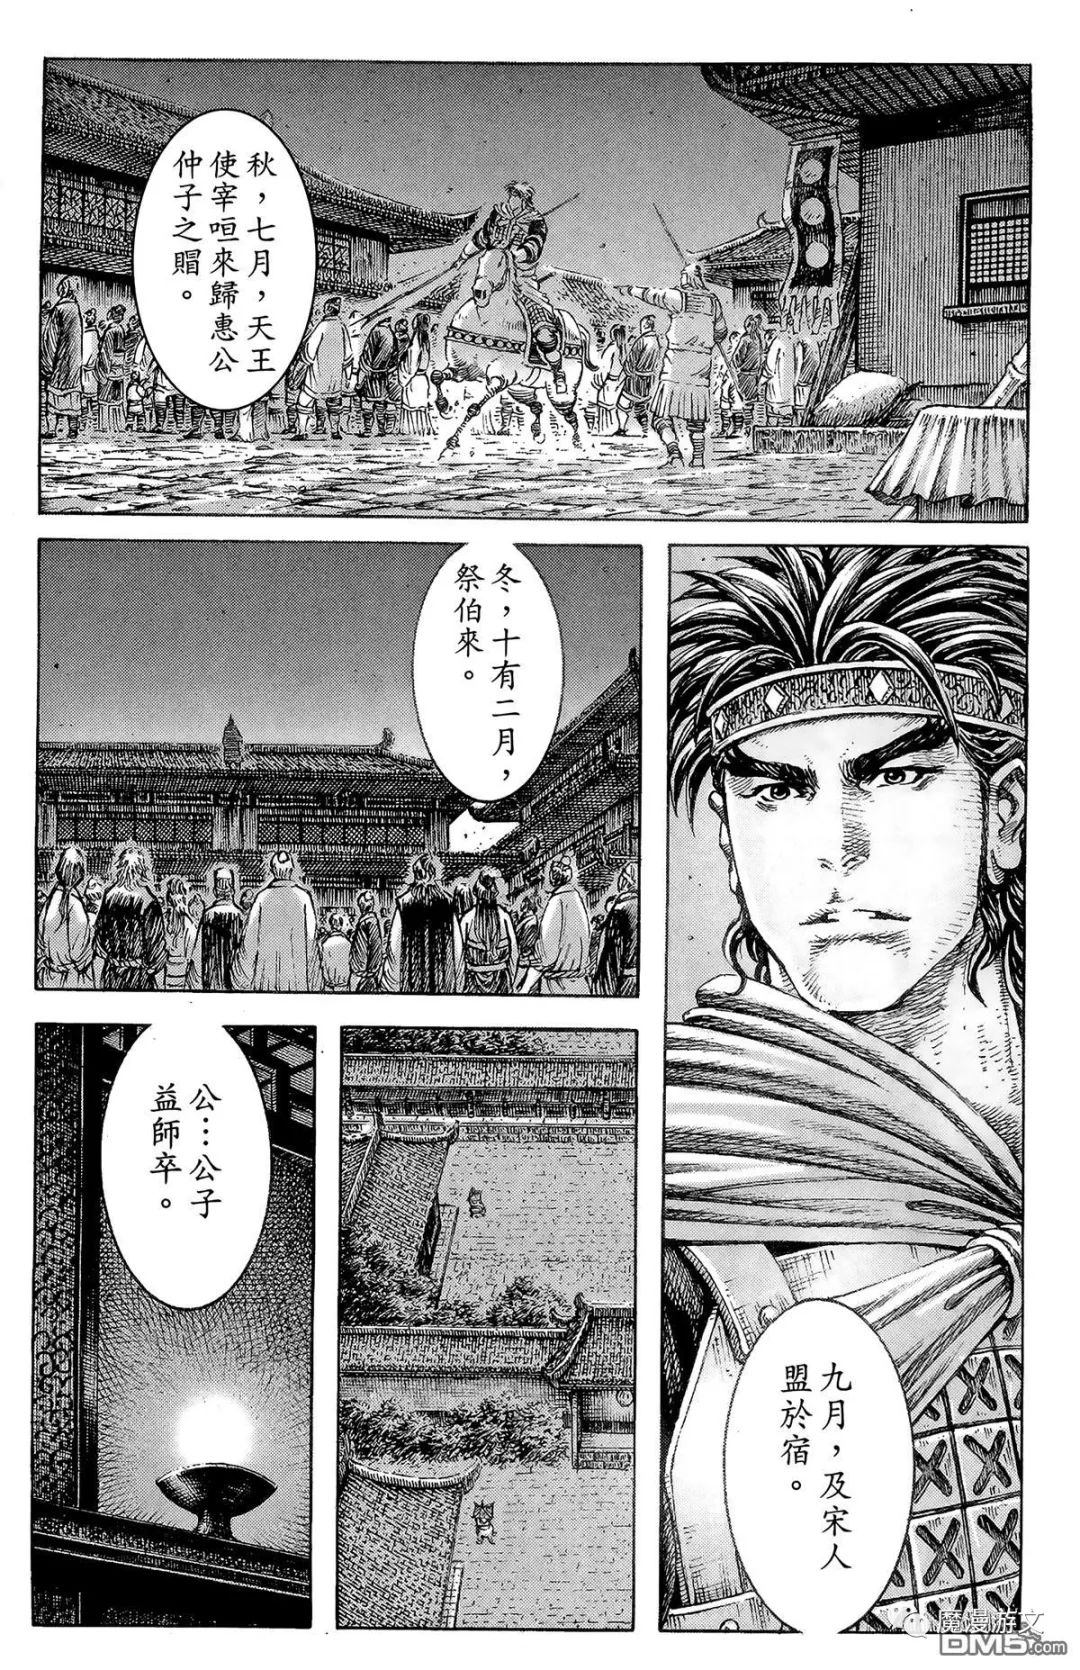 《火鳳燎原》第三十九卷 戲劇 第150張